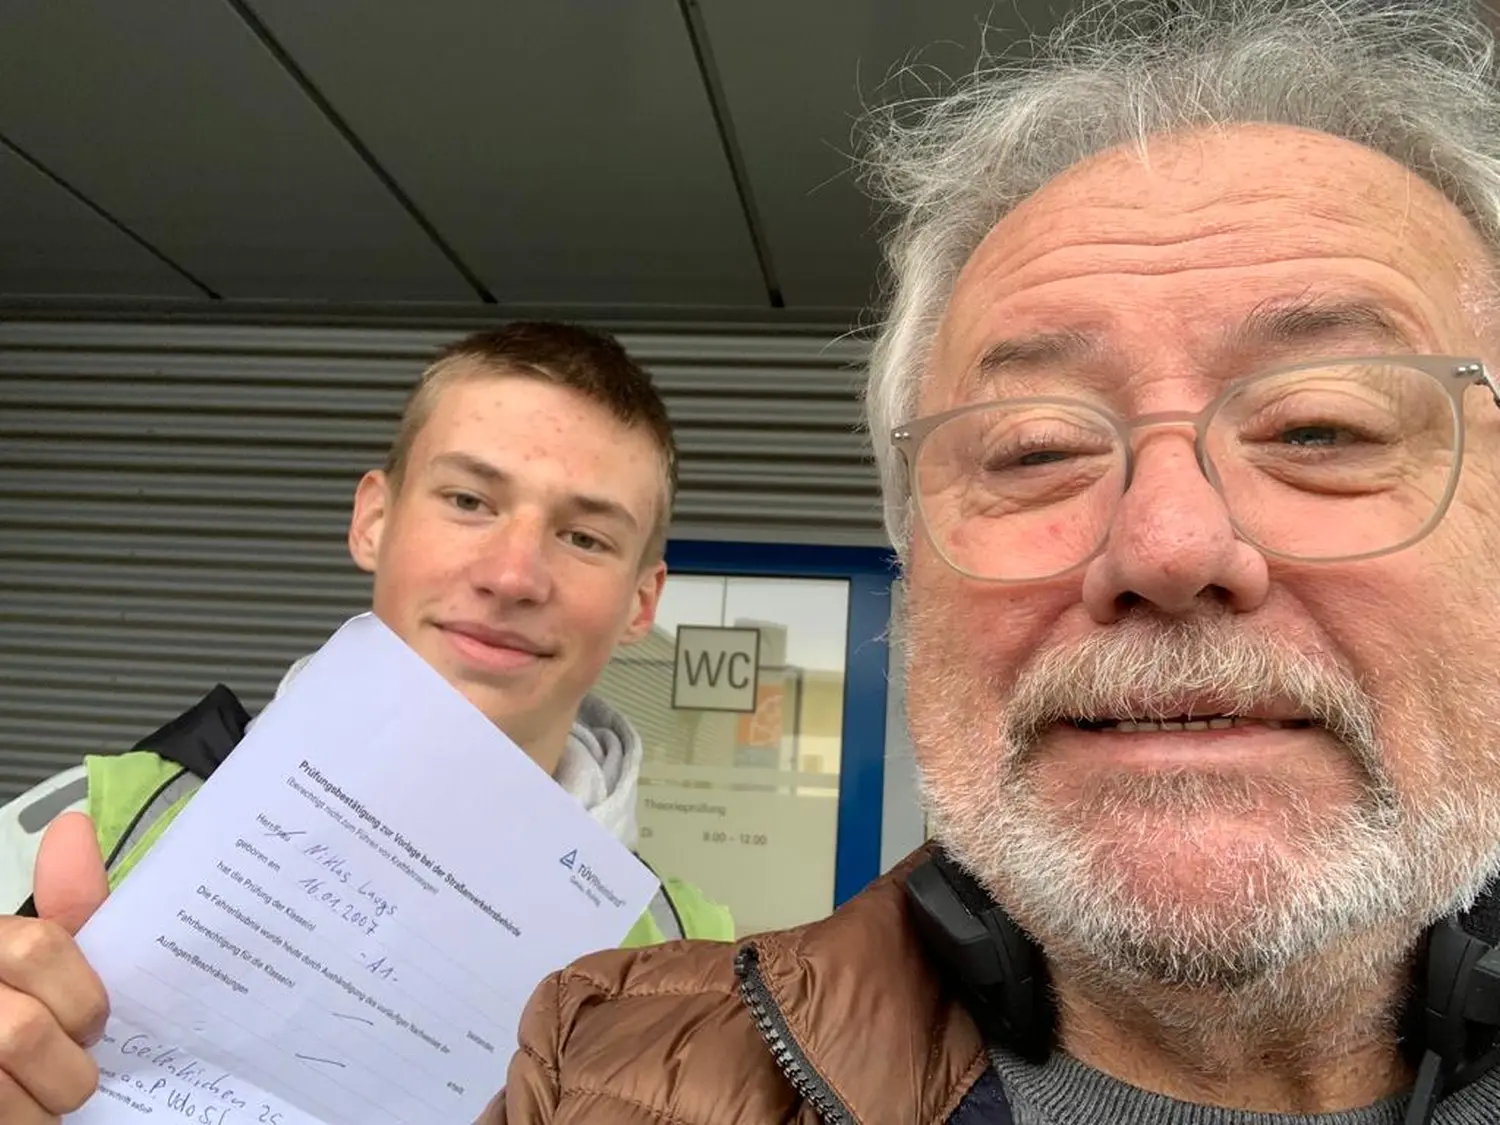 Fahrschulteam Tarnovski GbR, ein alter Mann und ein Junge zeigen das Zertifikat